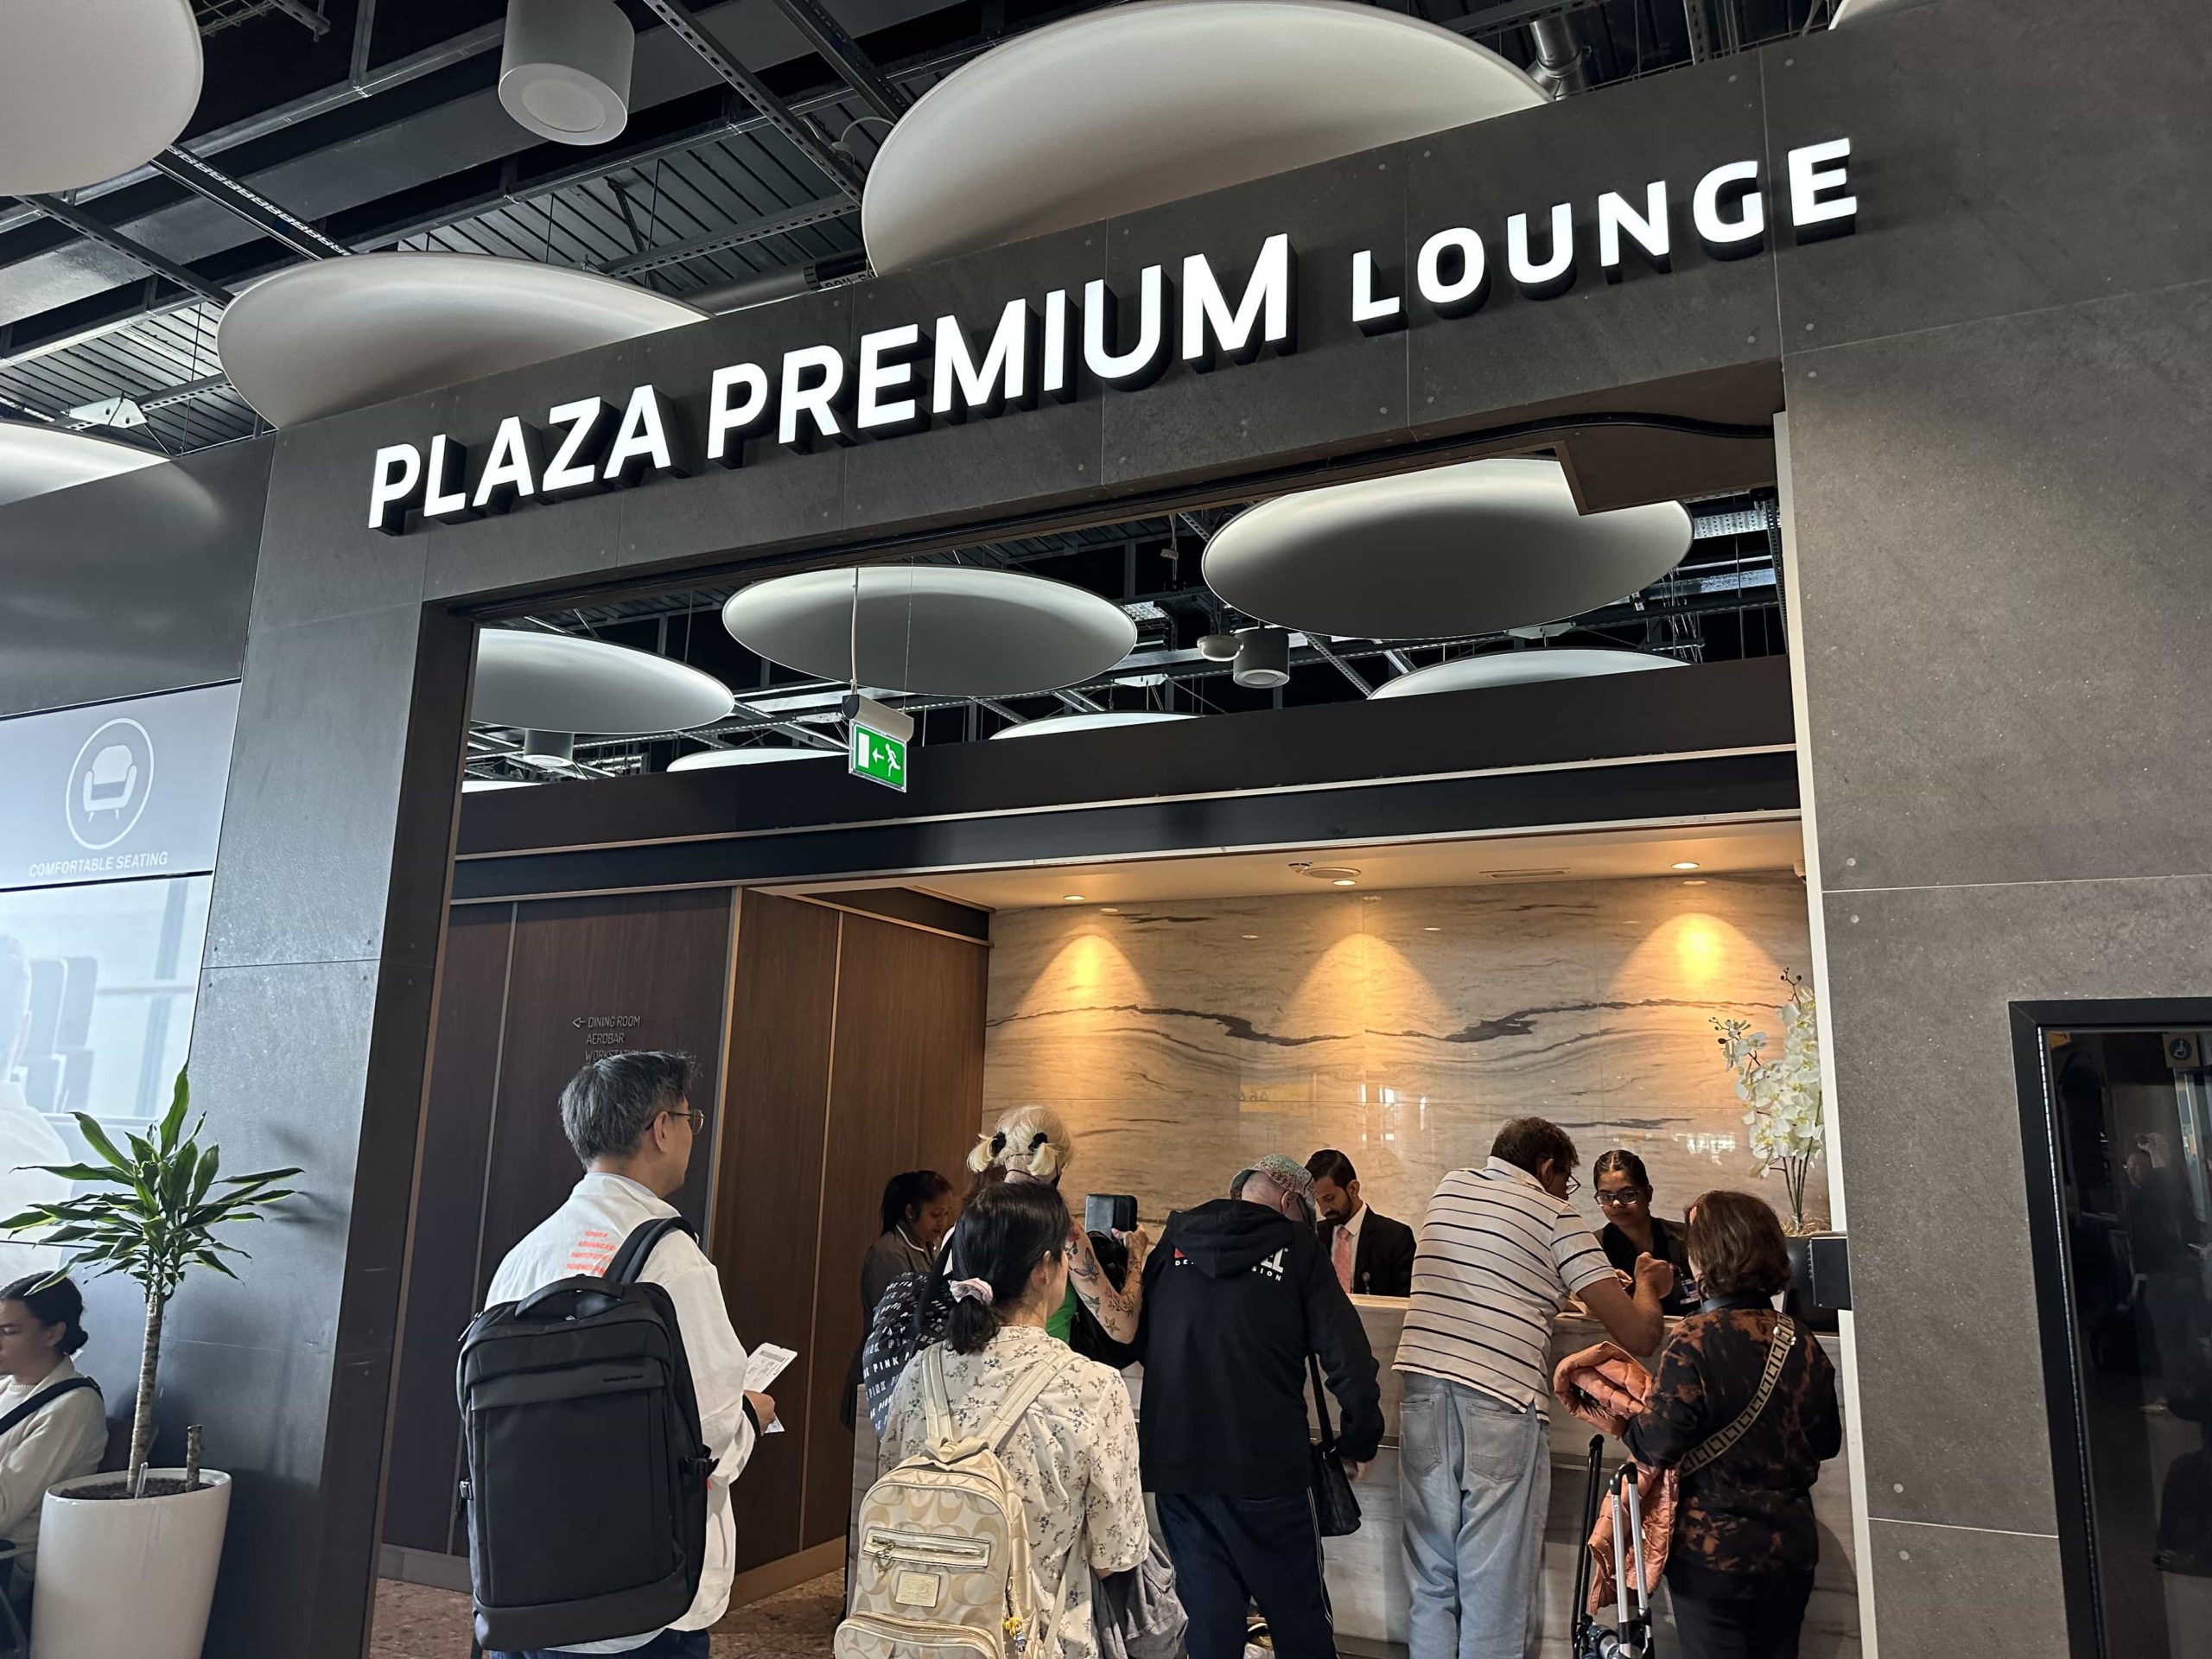 The entrance to Plaza Premium Lounge at Heathrow Terminal 5